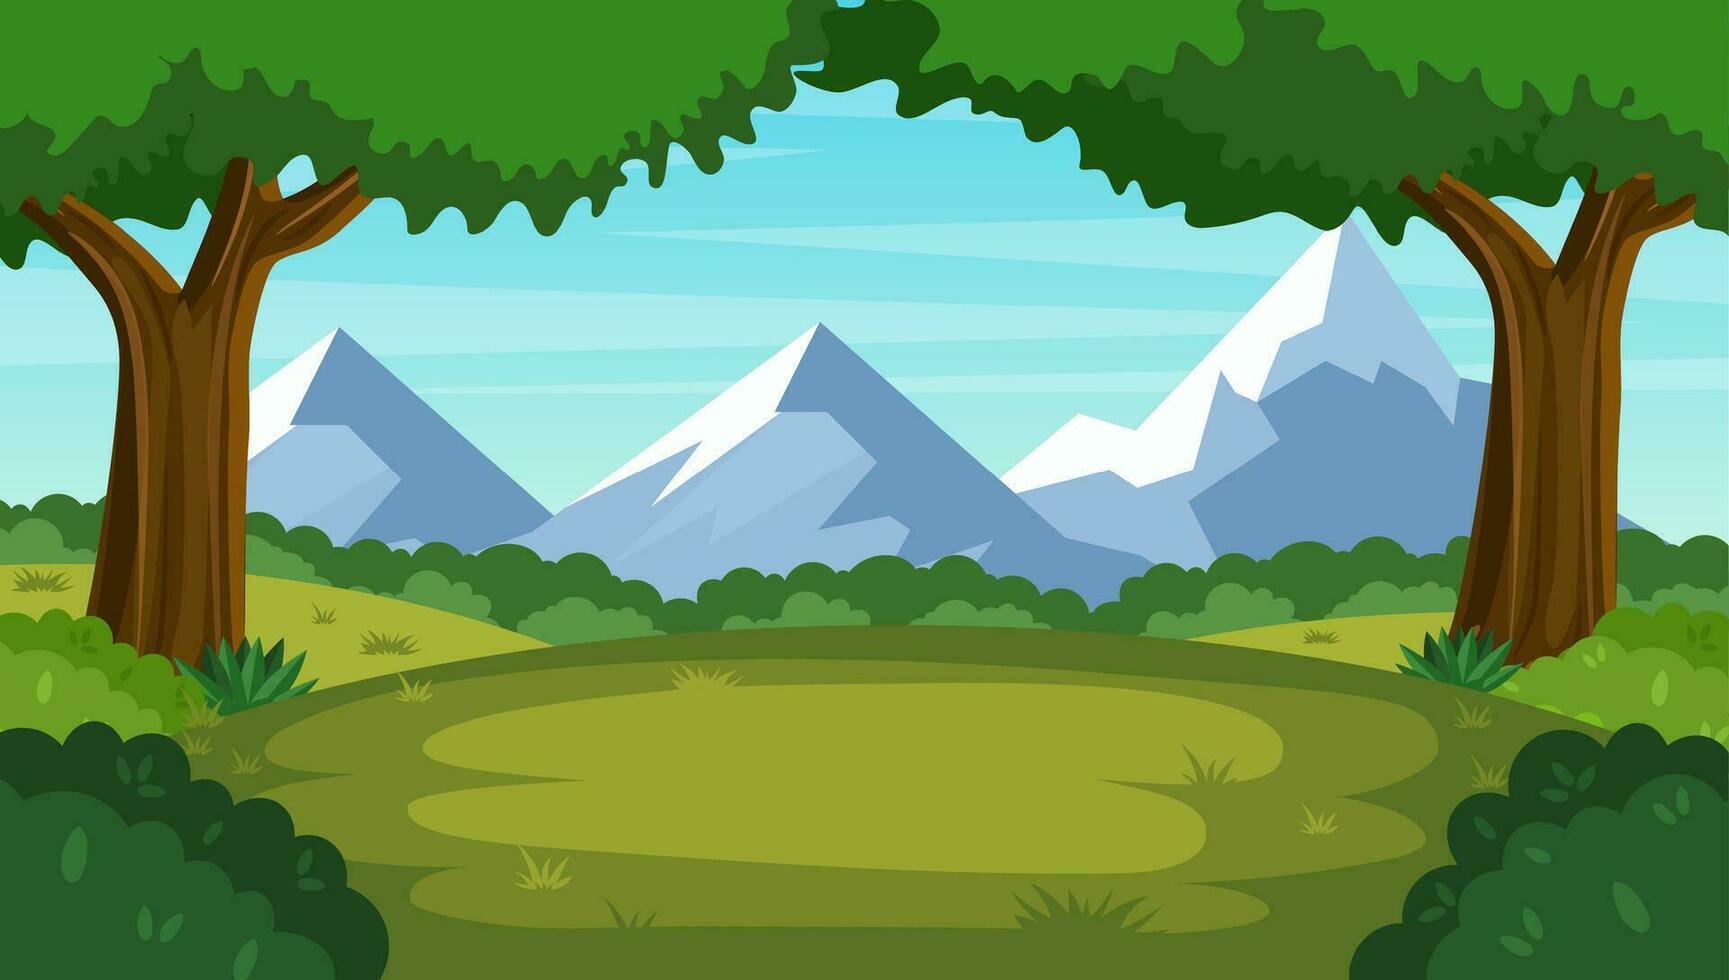 Karikatur Wald Hintergrund, Natur Landschaft mit laubabwerfend Bäume, Grün Gras, Büsche, Berg. Landschaft Sicht, Sommer- oder Frühling Holz. Vektor Illustration im eben Stil